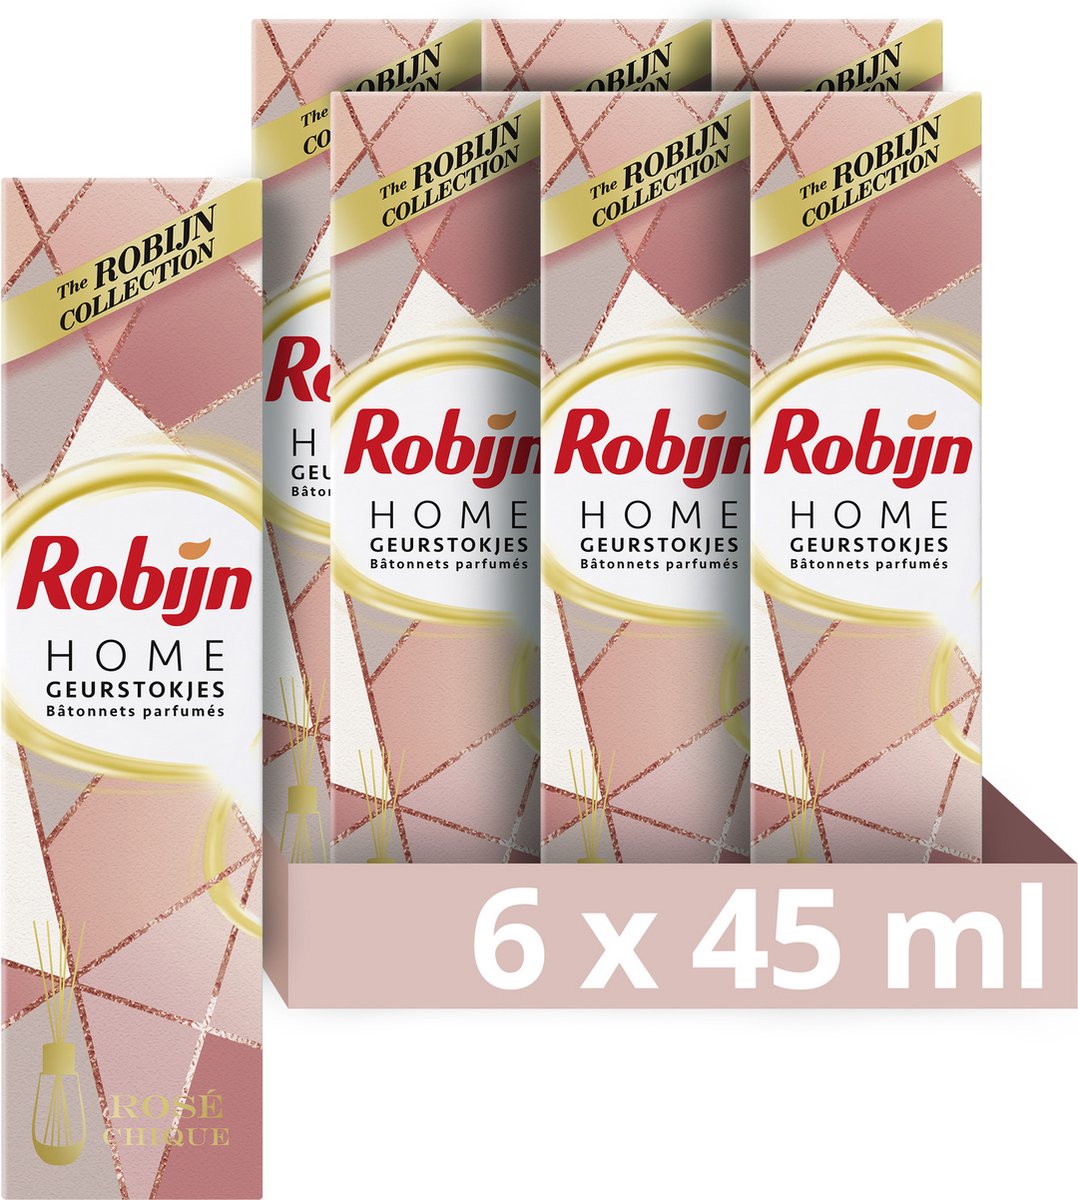 Robijn Home Rosé Chique Geurstokjes - 6 x 45 ml - Voordeelverpakking - Robijn